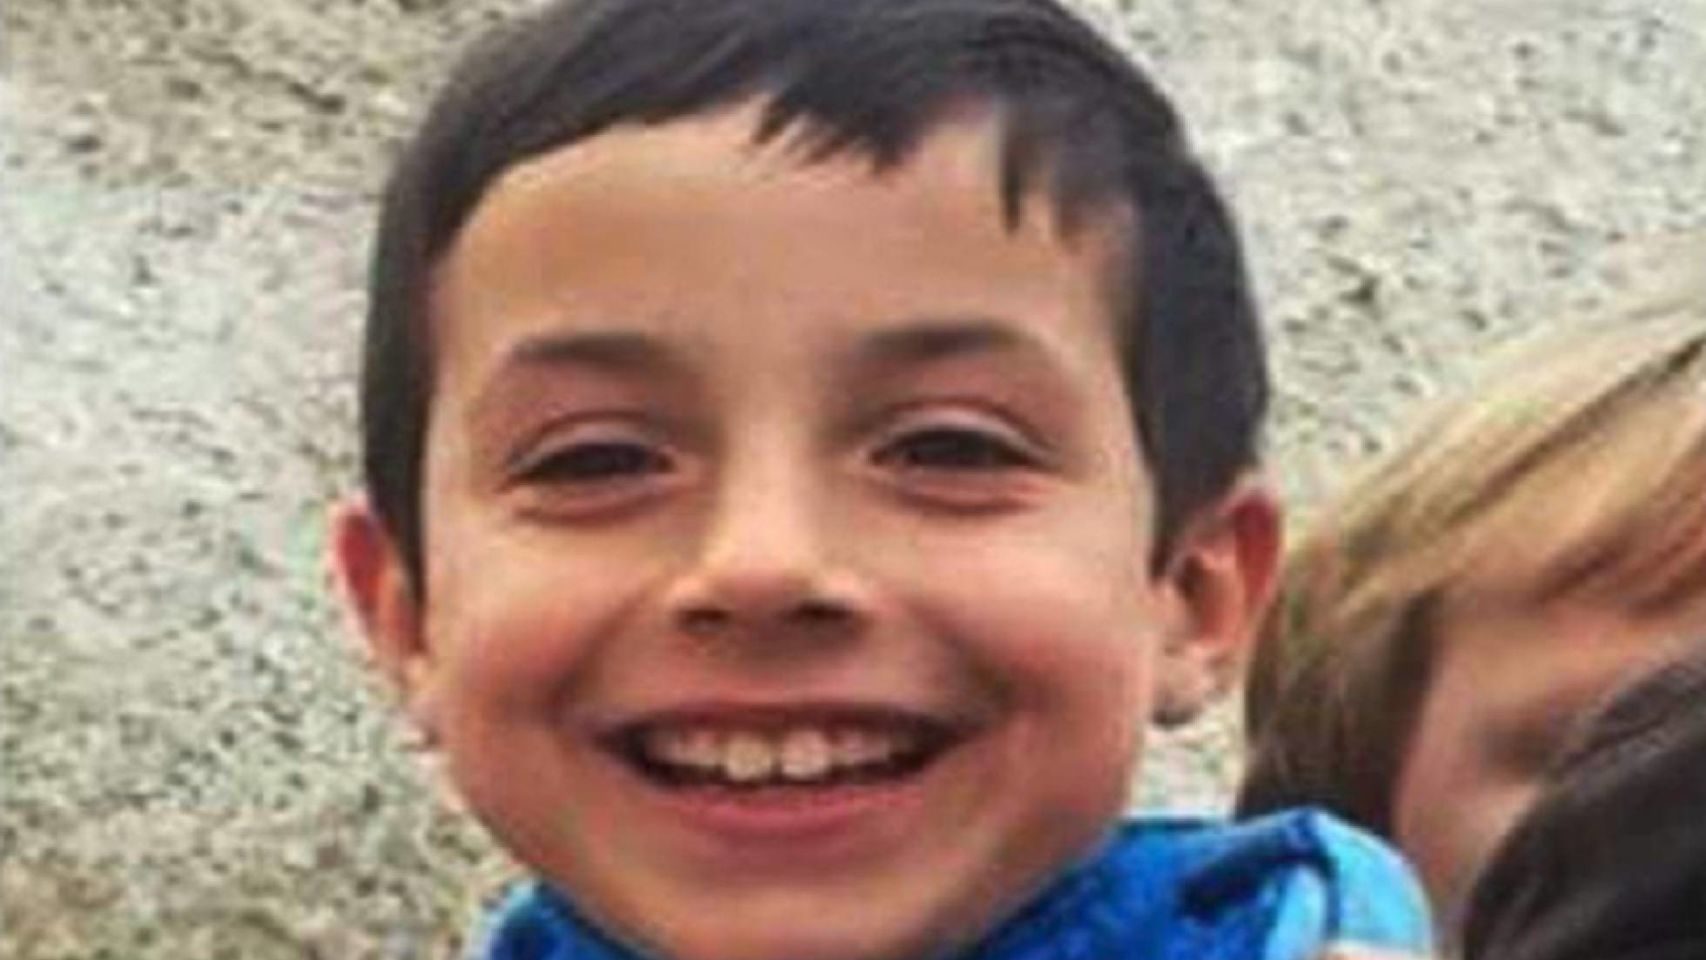 Buscan a un niño de 8 años desaparecido en Almería